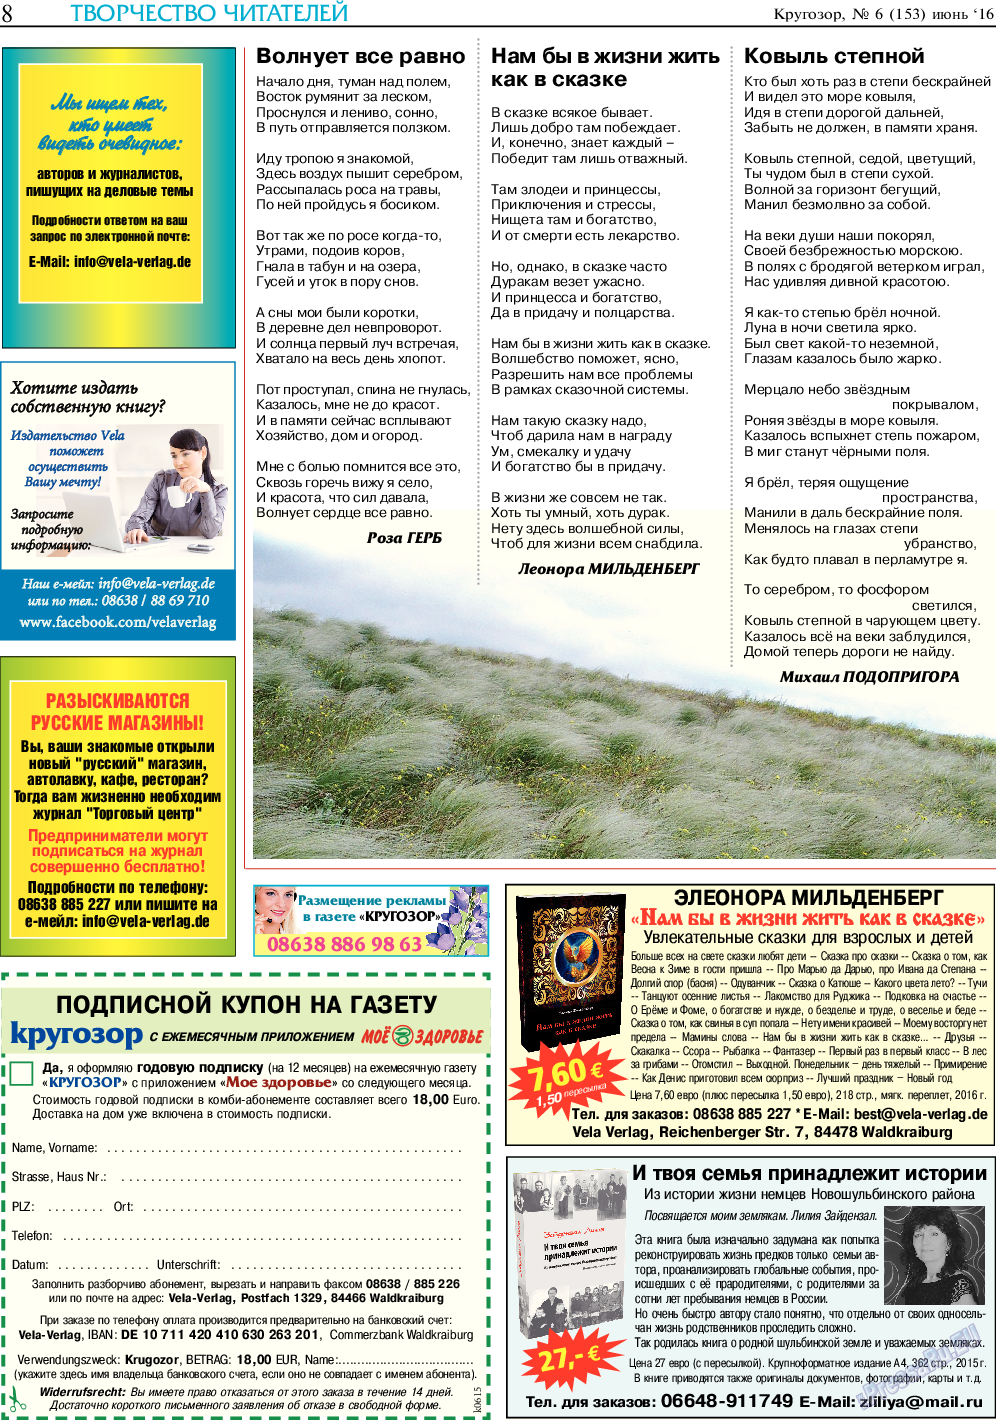 Кругозор, газета. 2016 №6 стр.8